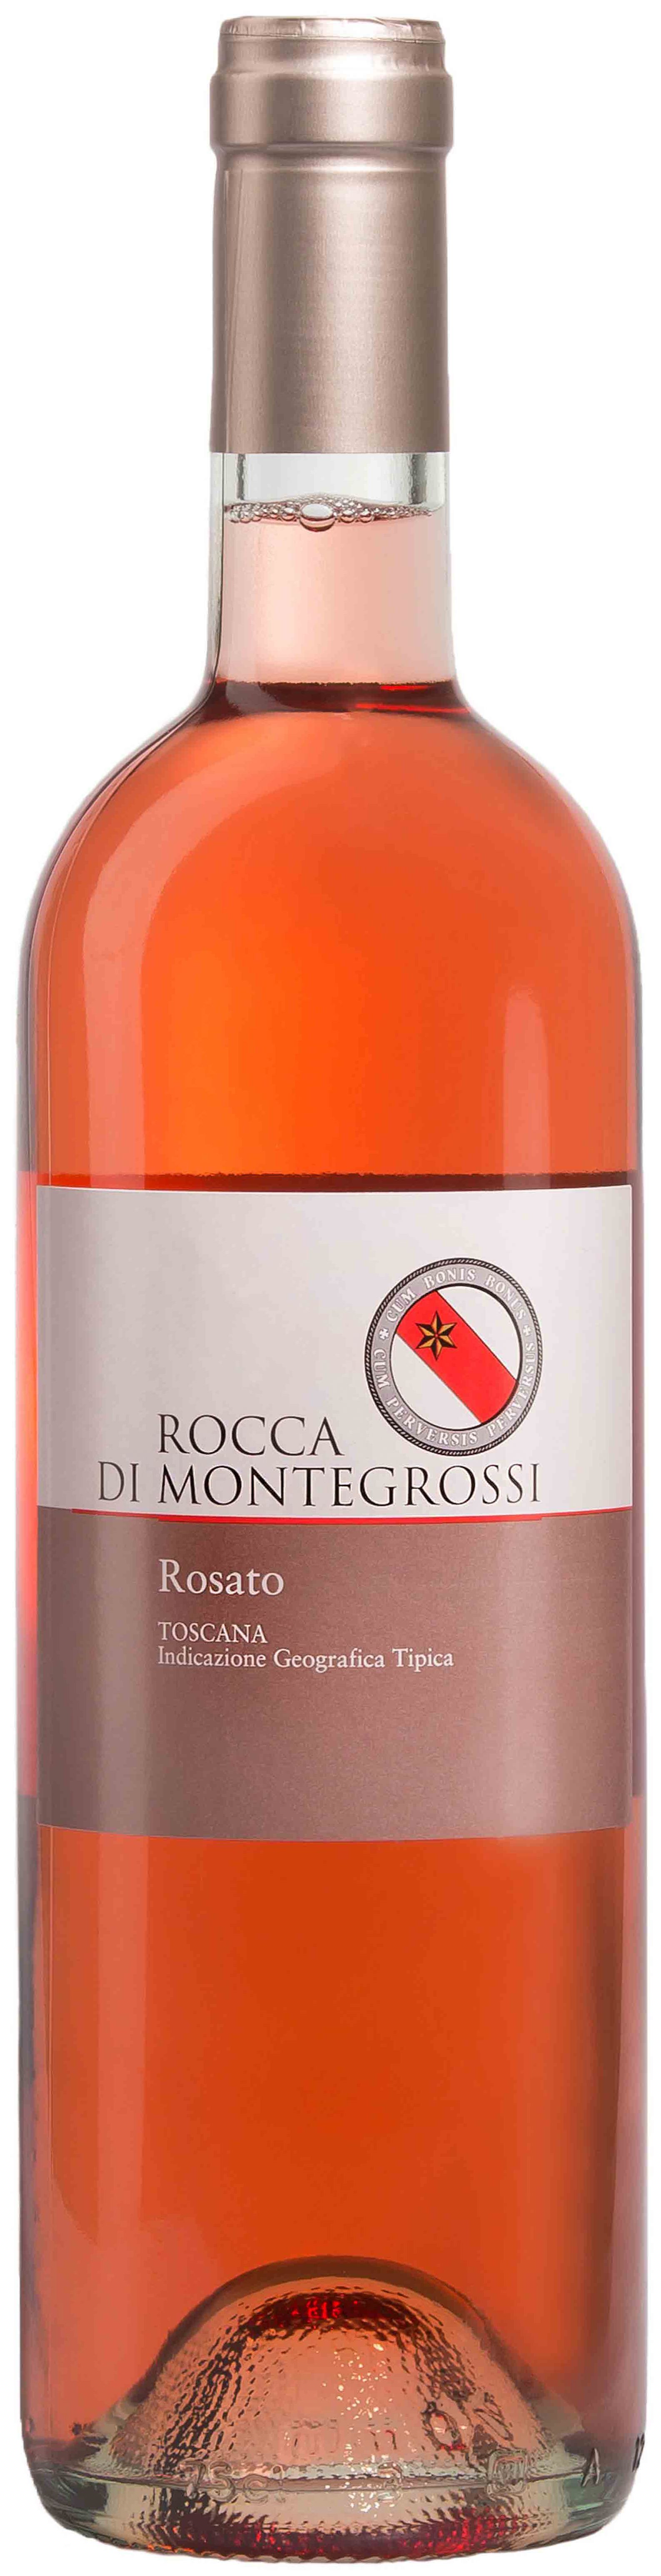 Rocca Di Montegrossi, Rosato, 2014